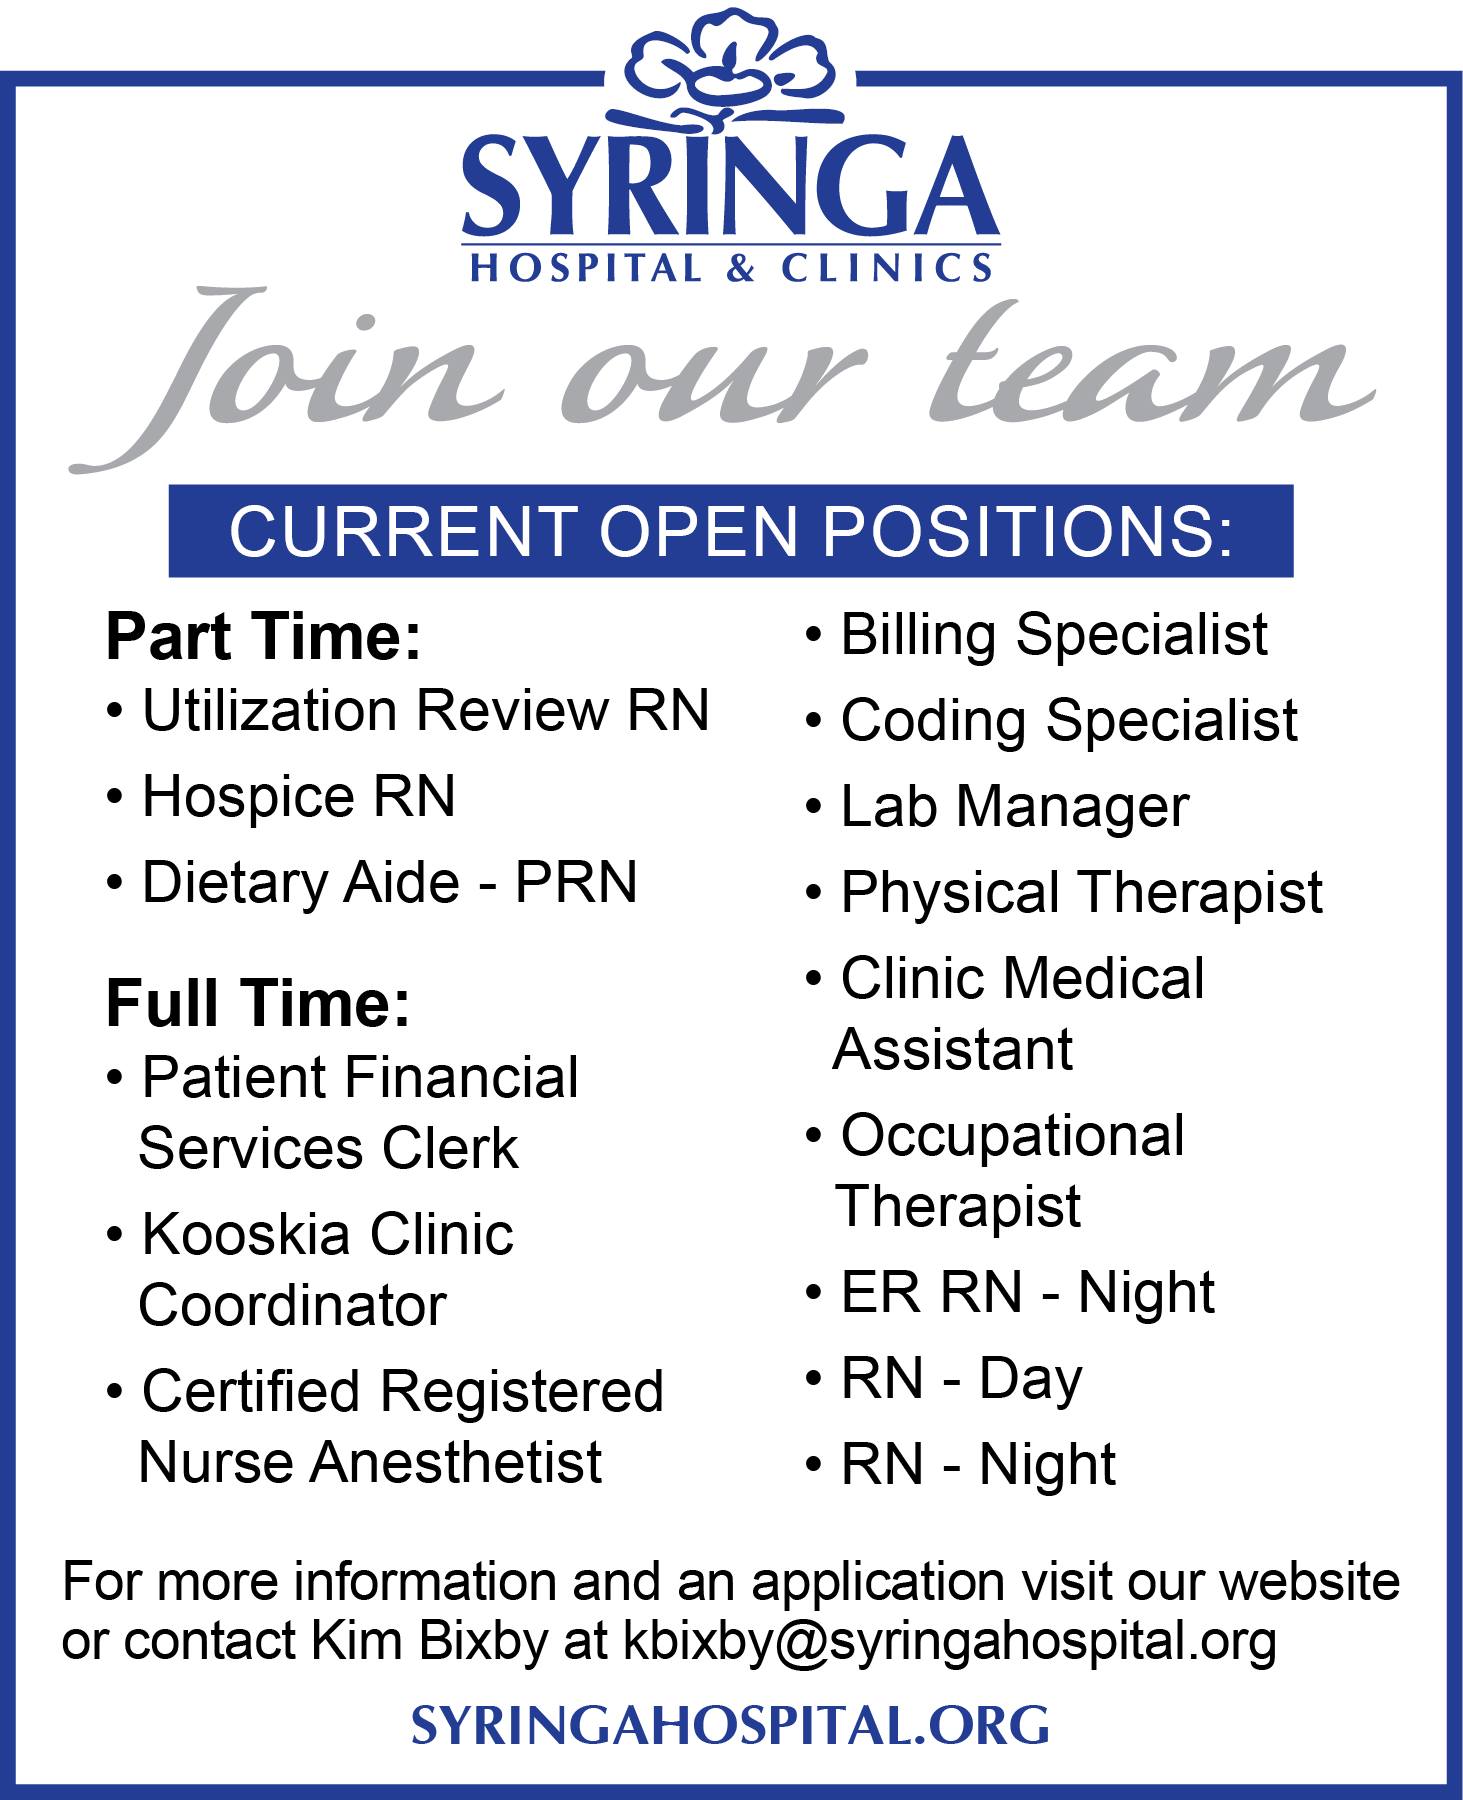 Syringa Hospital & Clinics. 722 W North St, Grangeville Idaho 83530